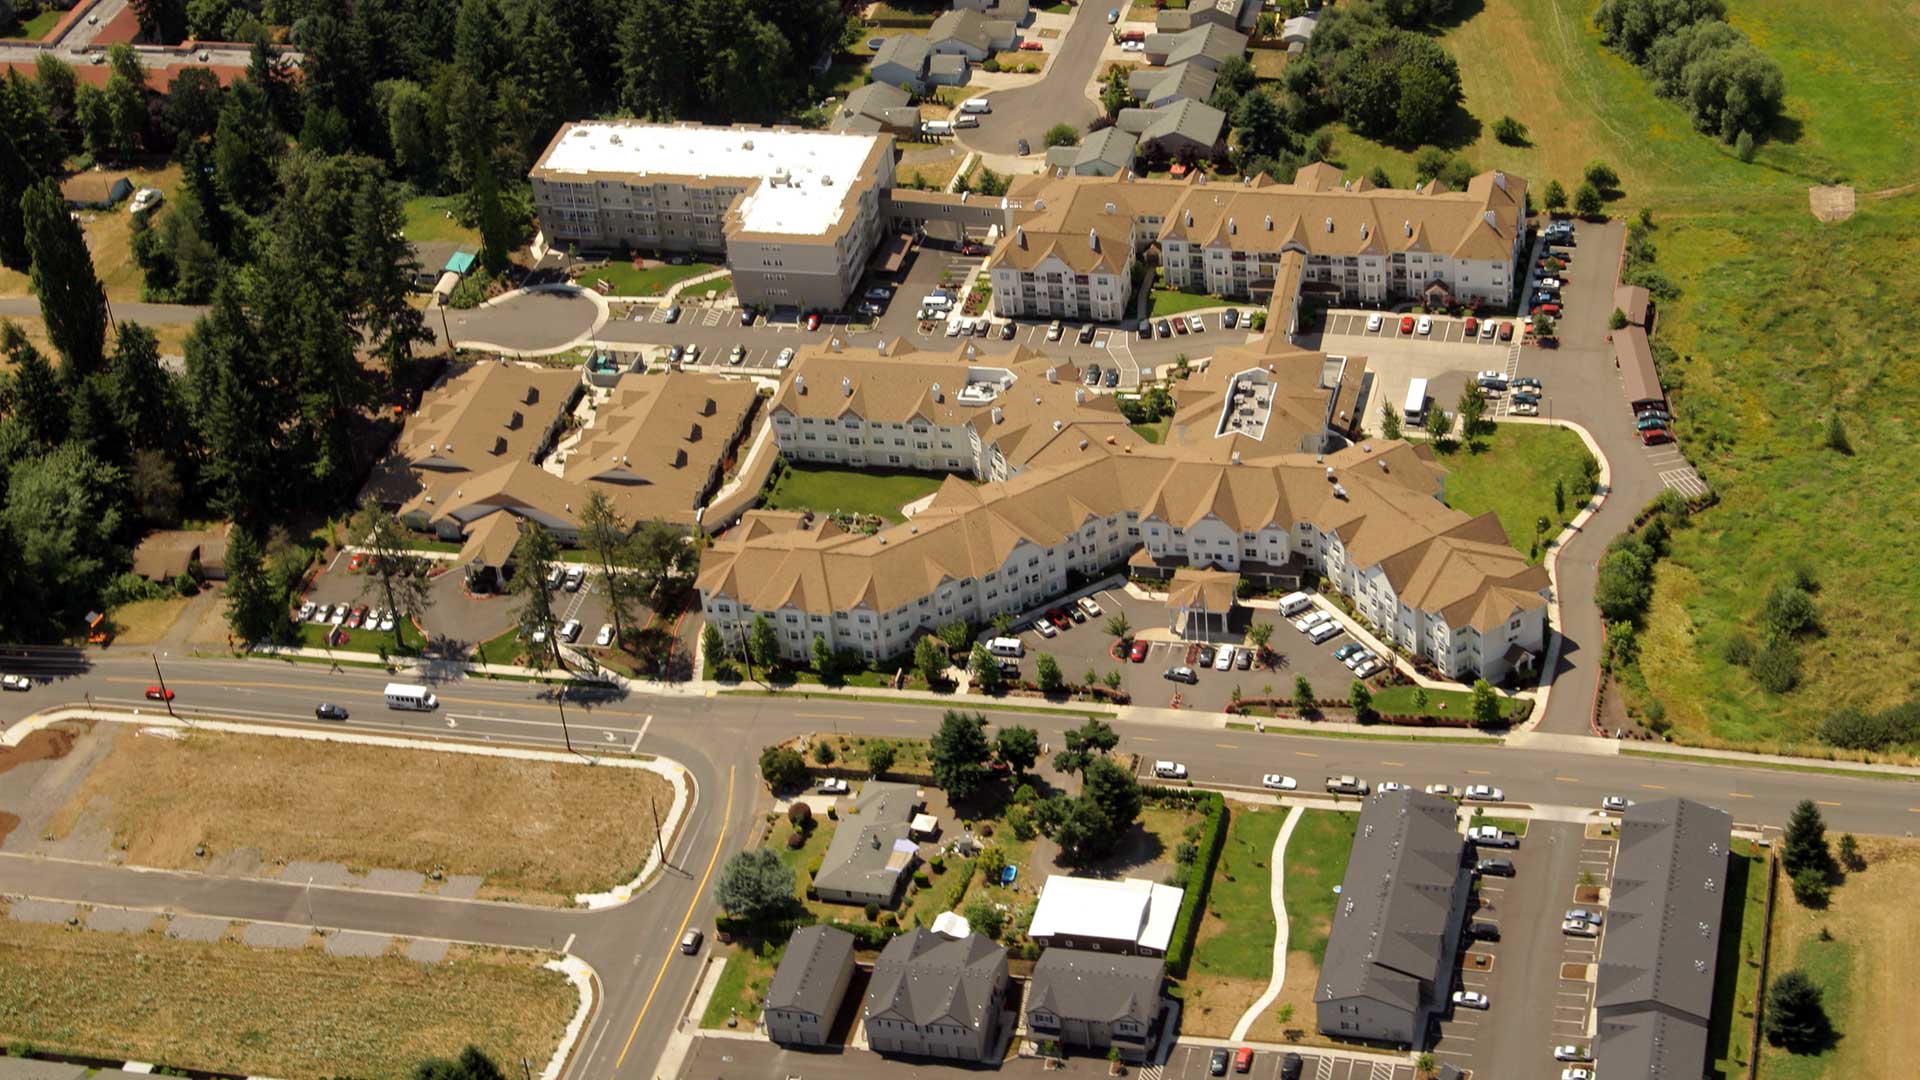 Glenwood Hills Retirement Center - aerial